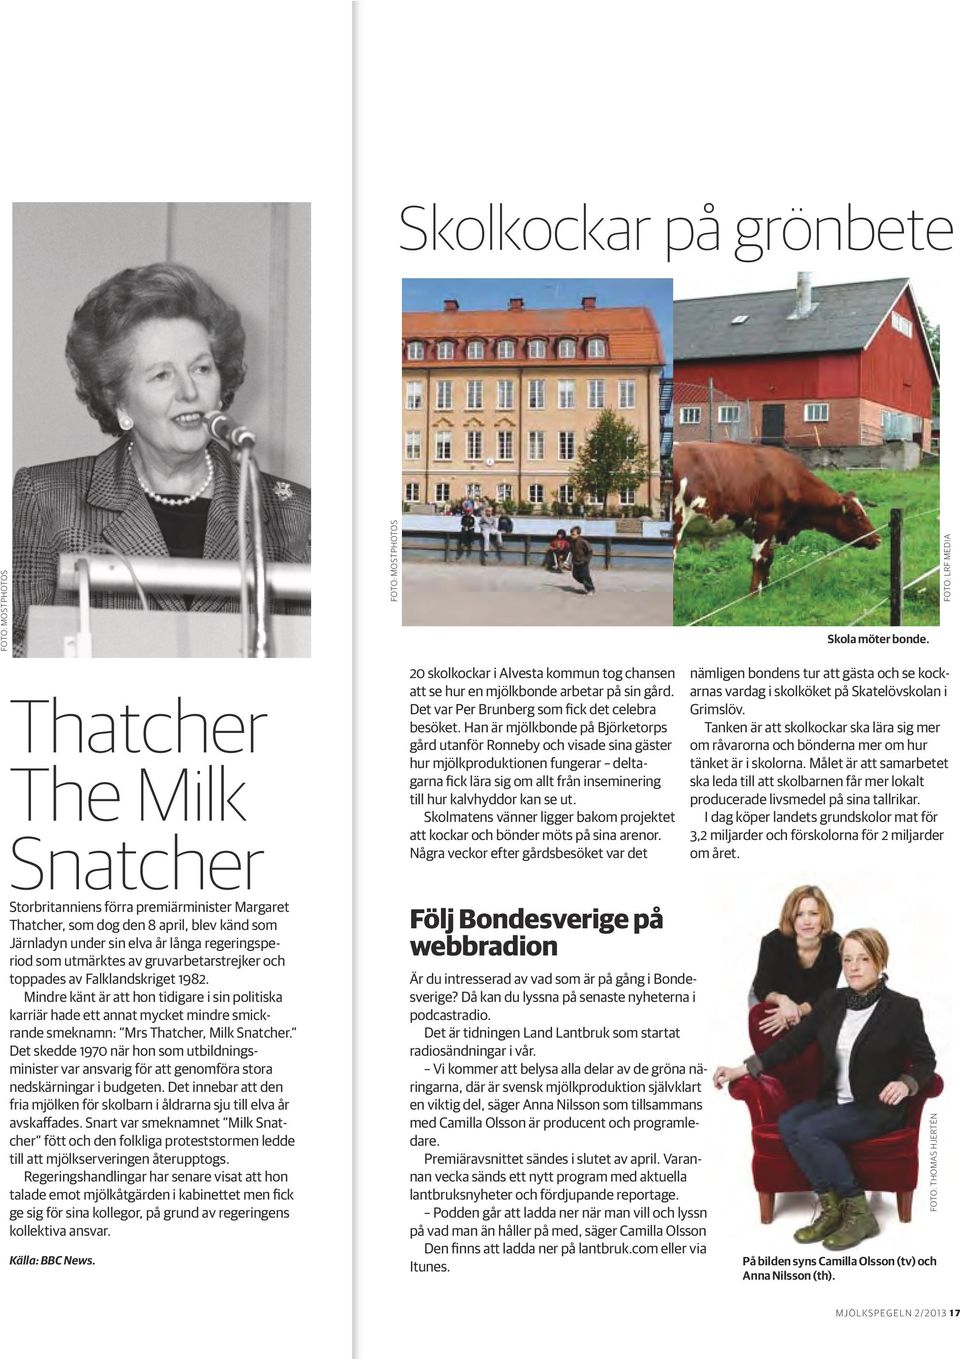 av gruvarbetarstrejker och toppades av Falklandskriget 1982. Mindre känt är att hon tidigare i sin politiska karriär hade ett annat mycket mindre smickrande smeknamn: Mrs Thatcher, Milk Snatcher.